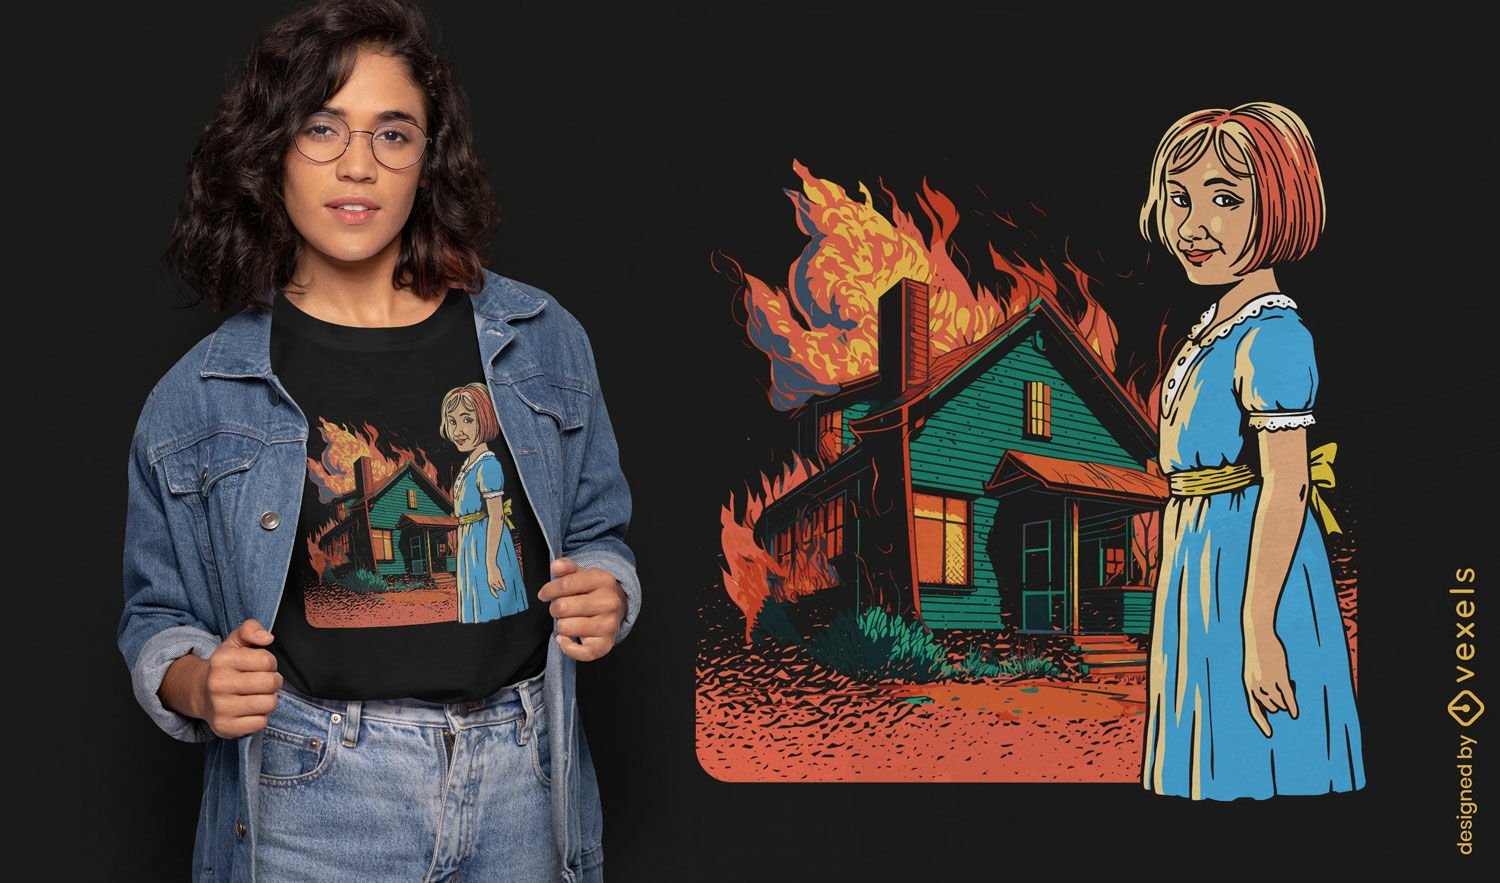 Gruseliges Haus brennt T-Shirt-Design nieder